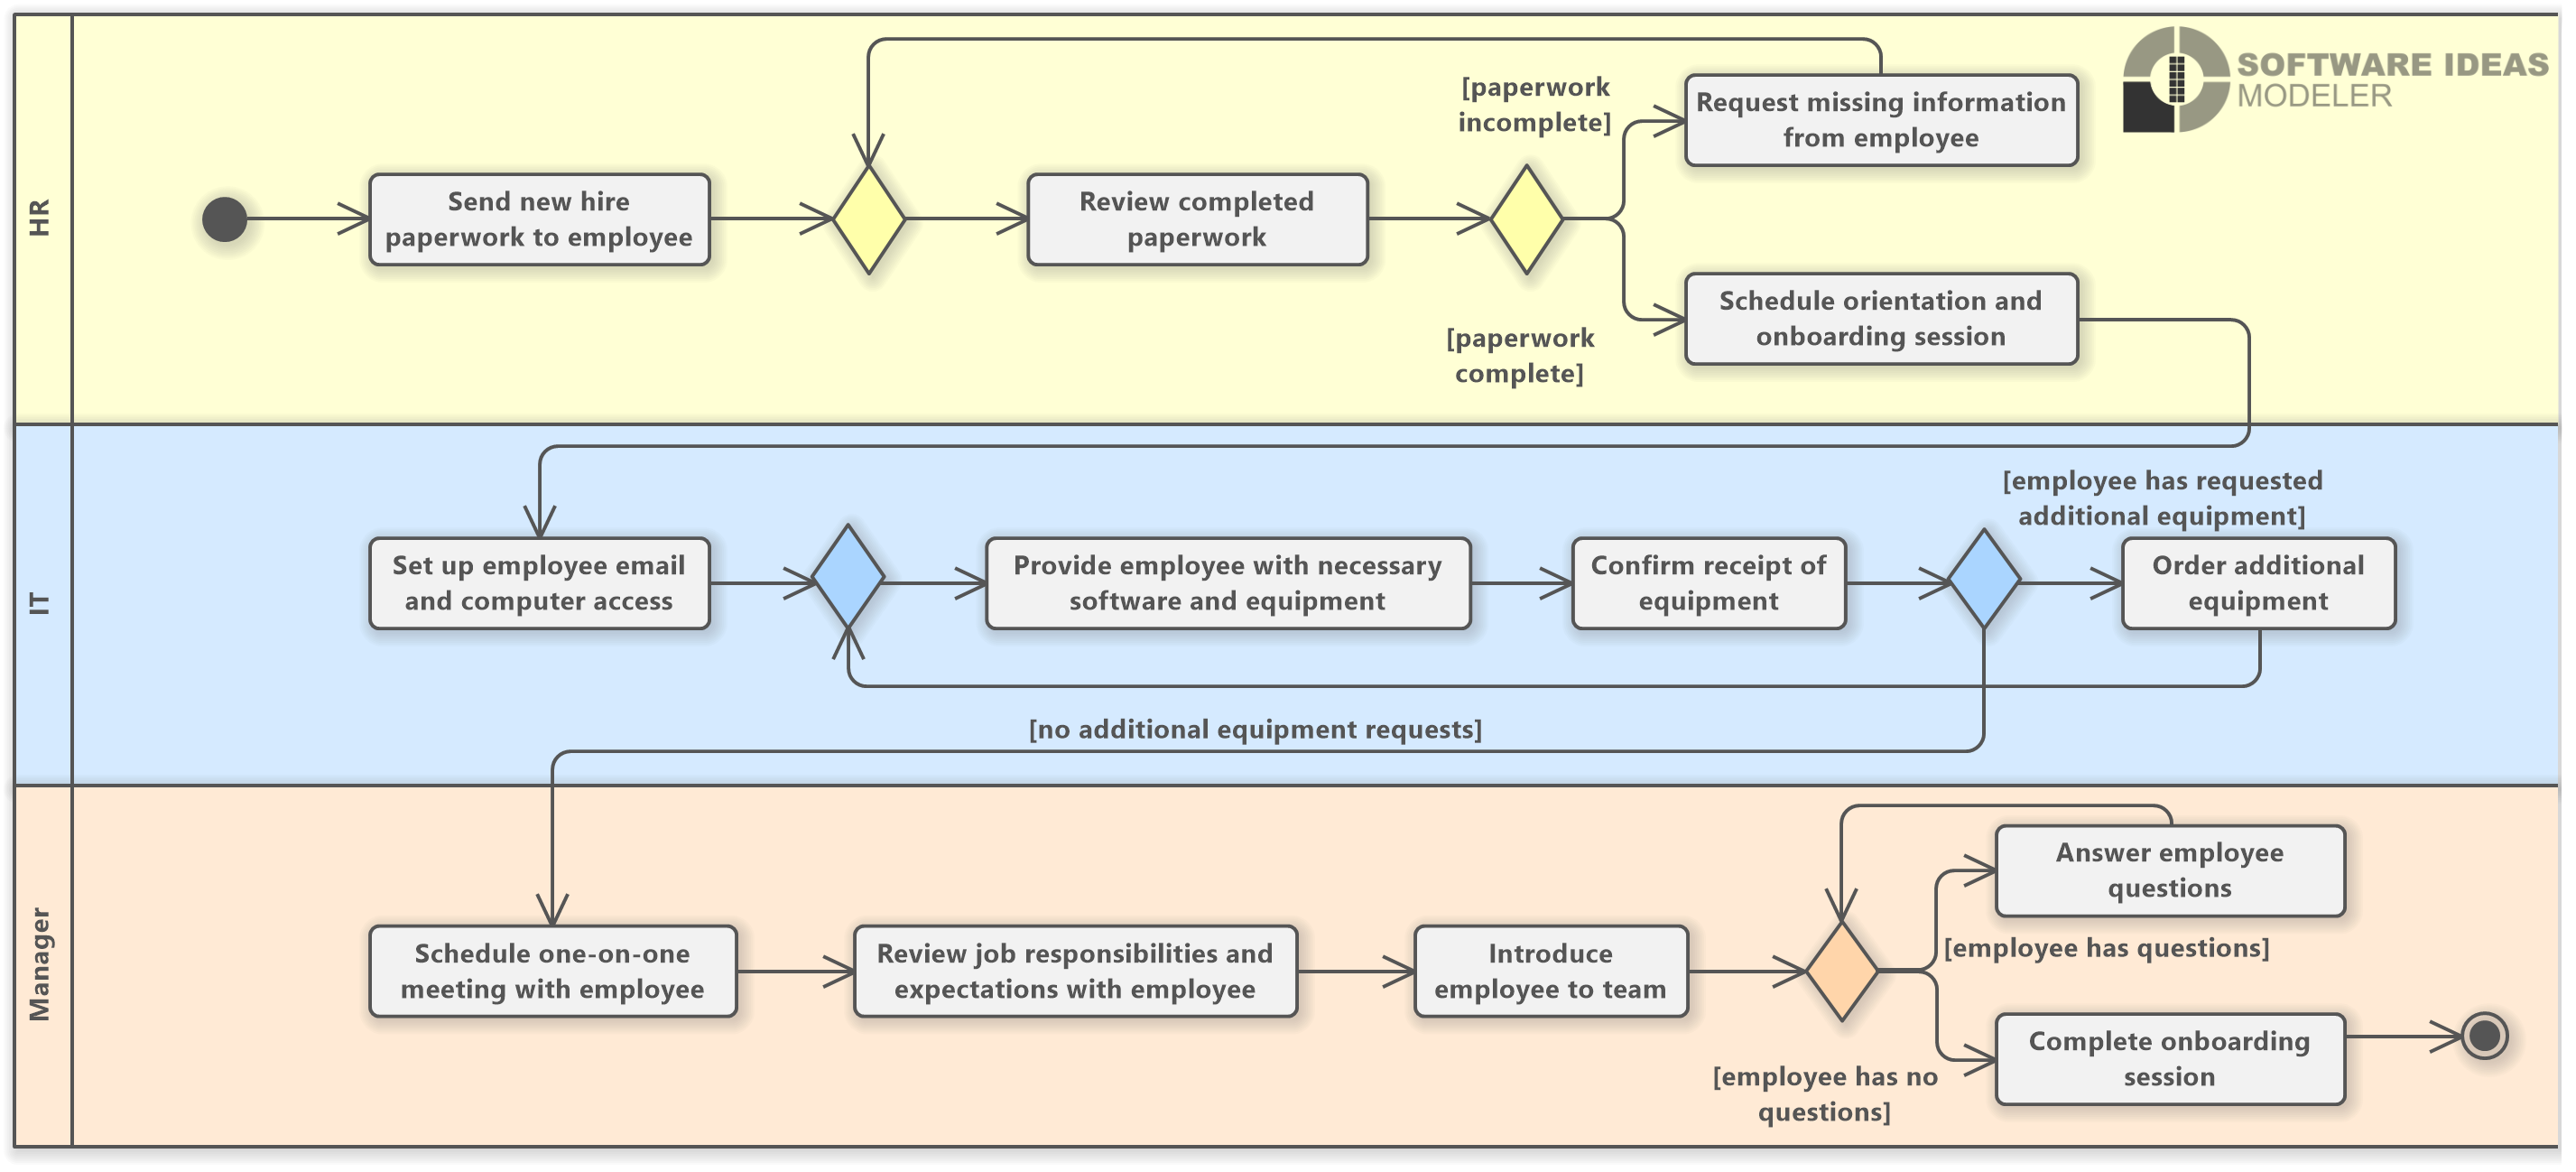 Employee Onboarding Workflow (UML Activity Diagram)